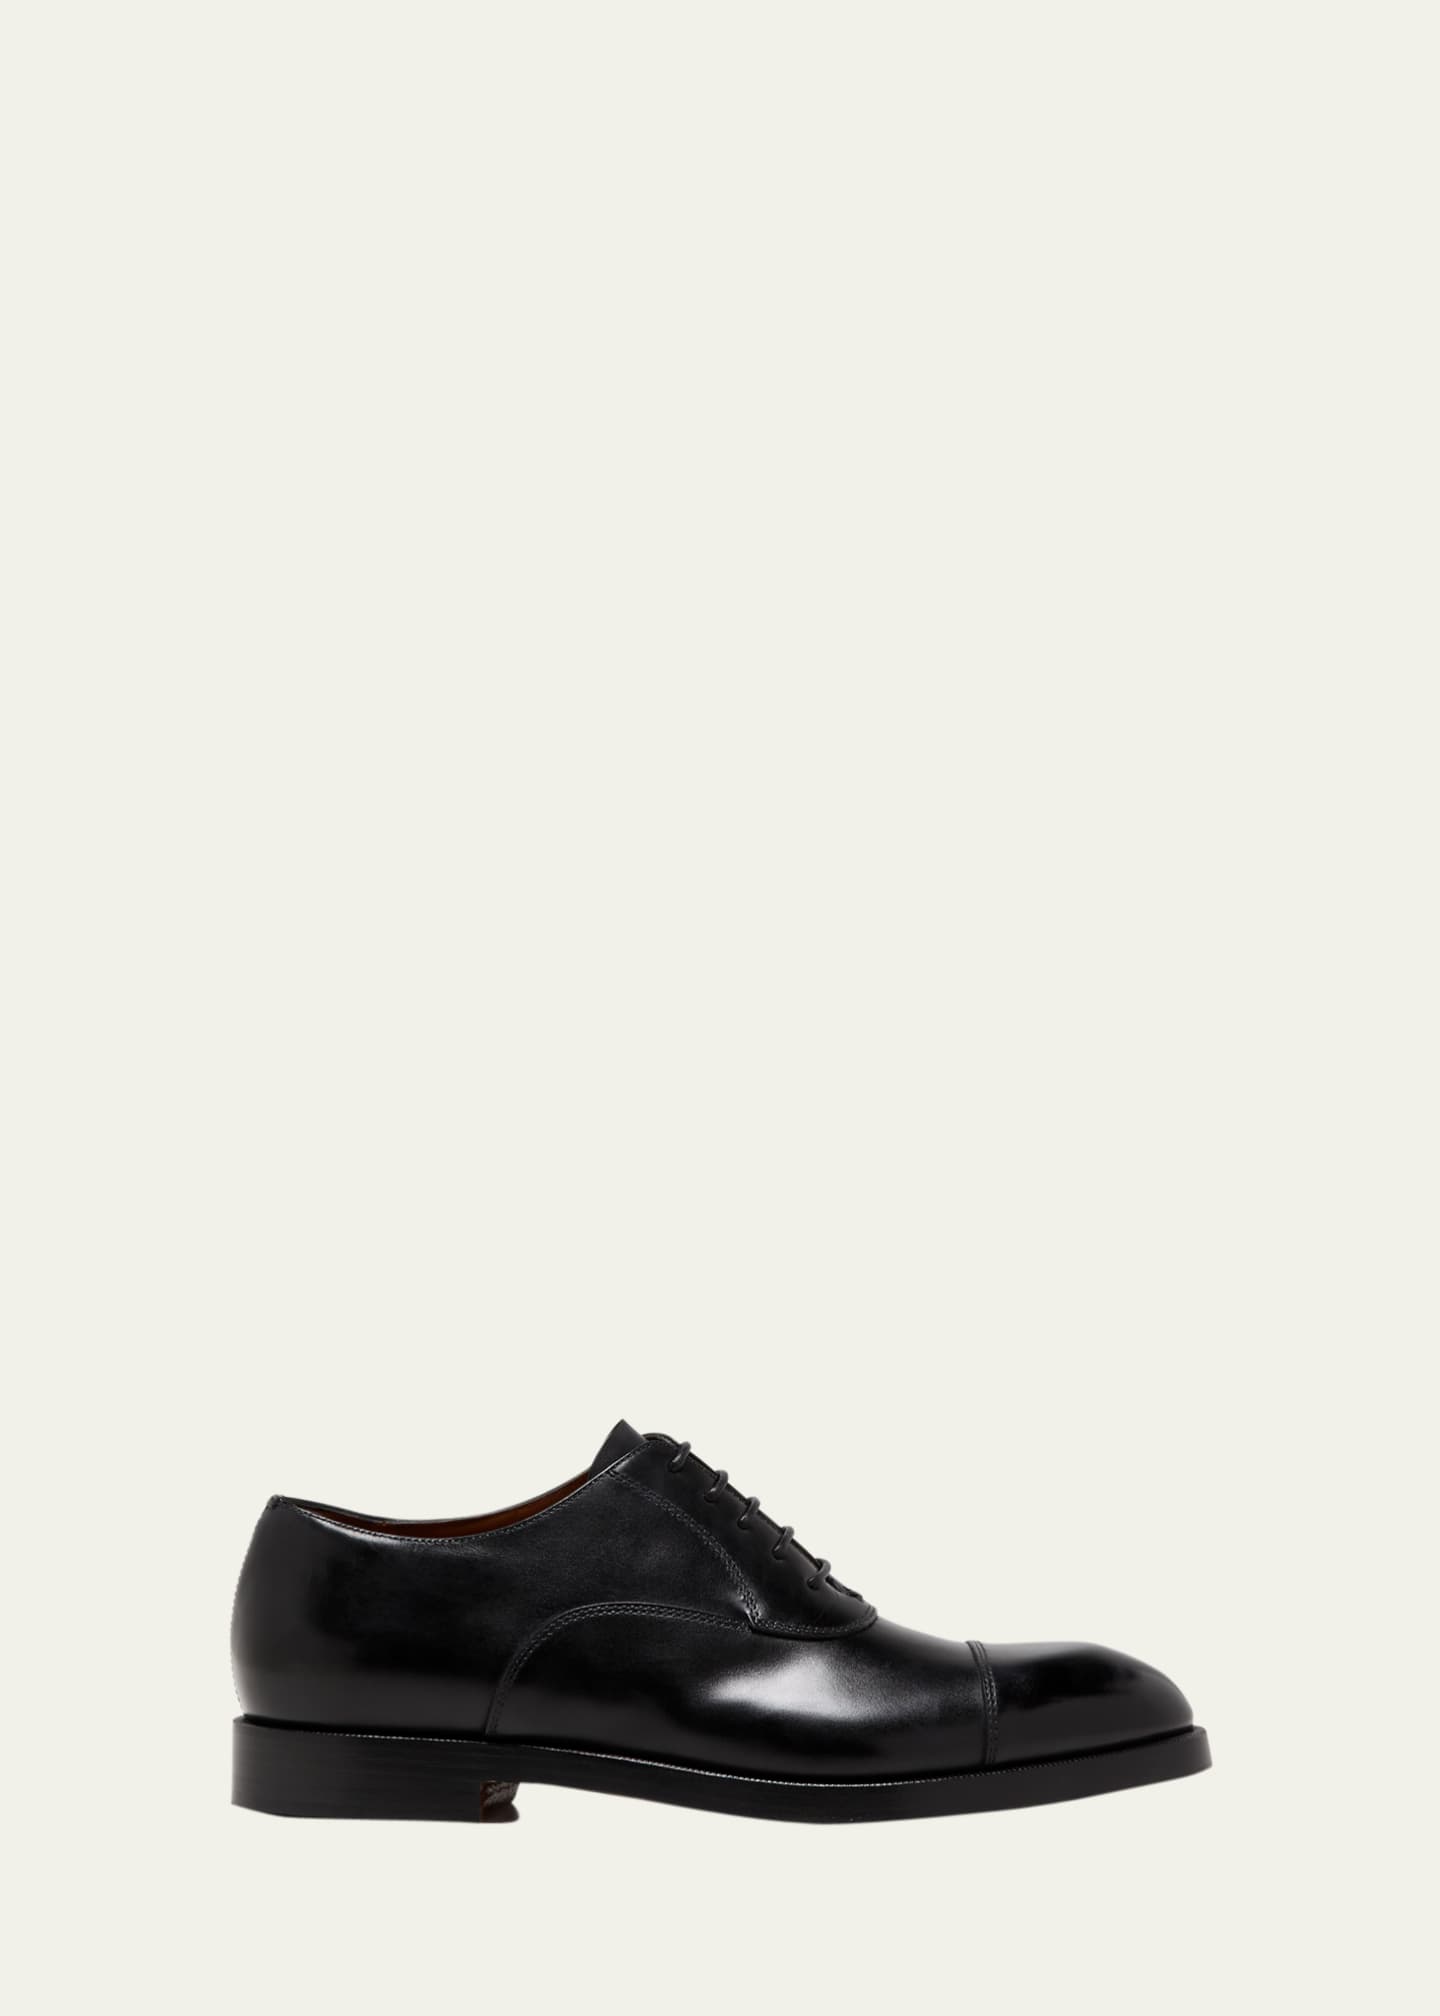 ZEGNA Men's Torino Cap Toe Leather Oxfords - Bergdorf Goodman